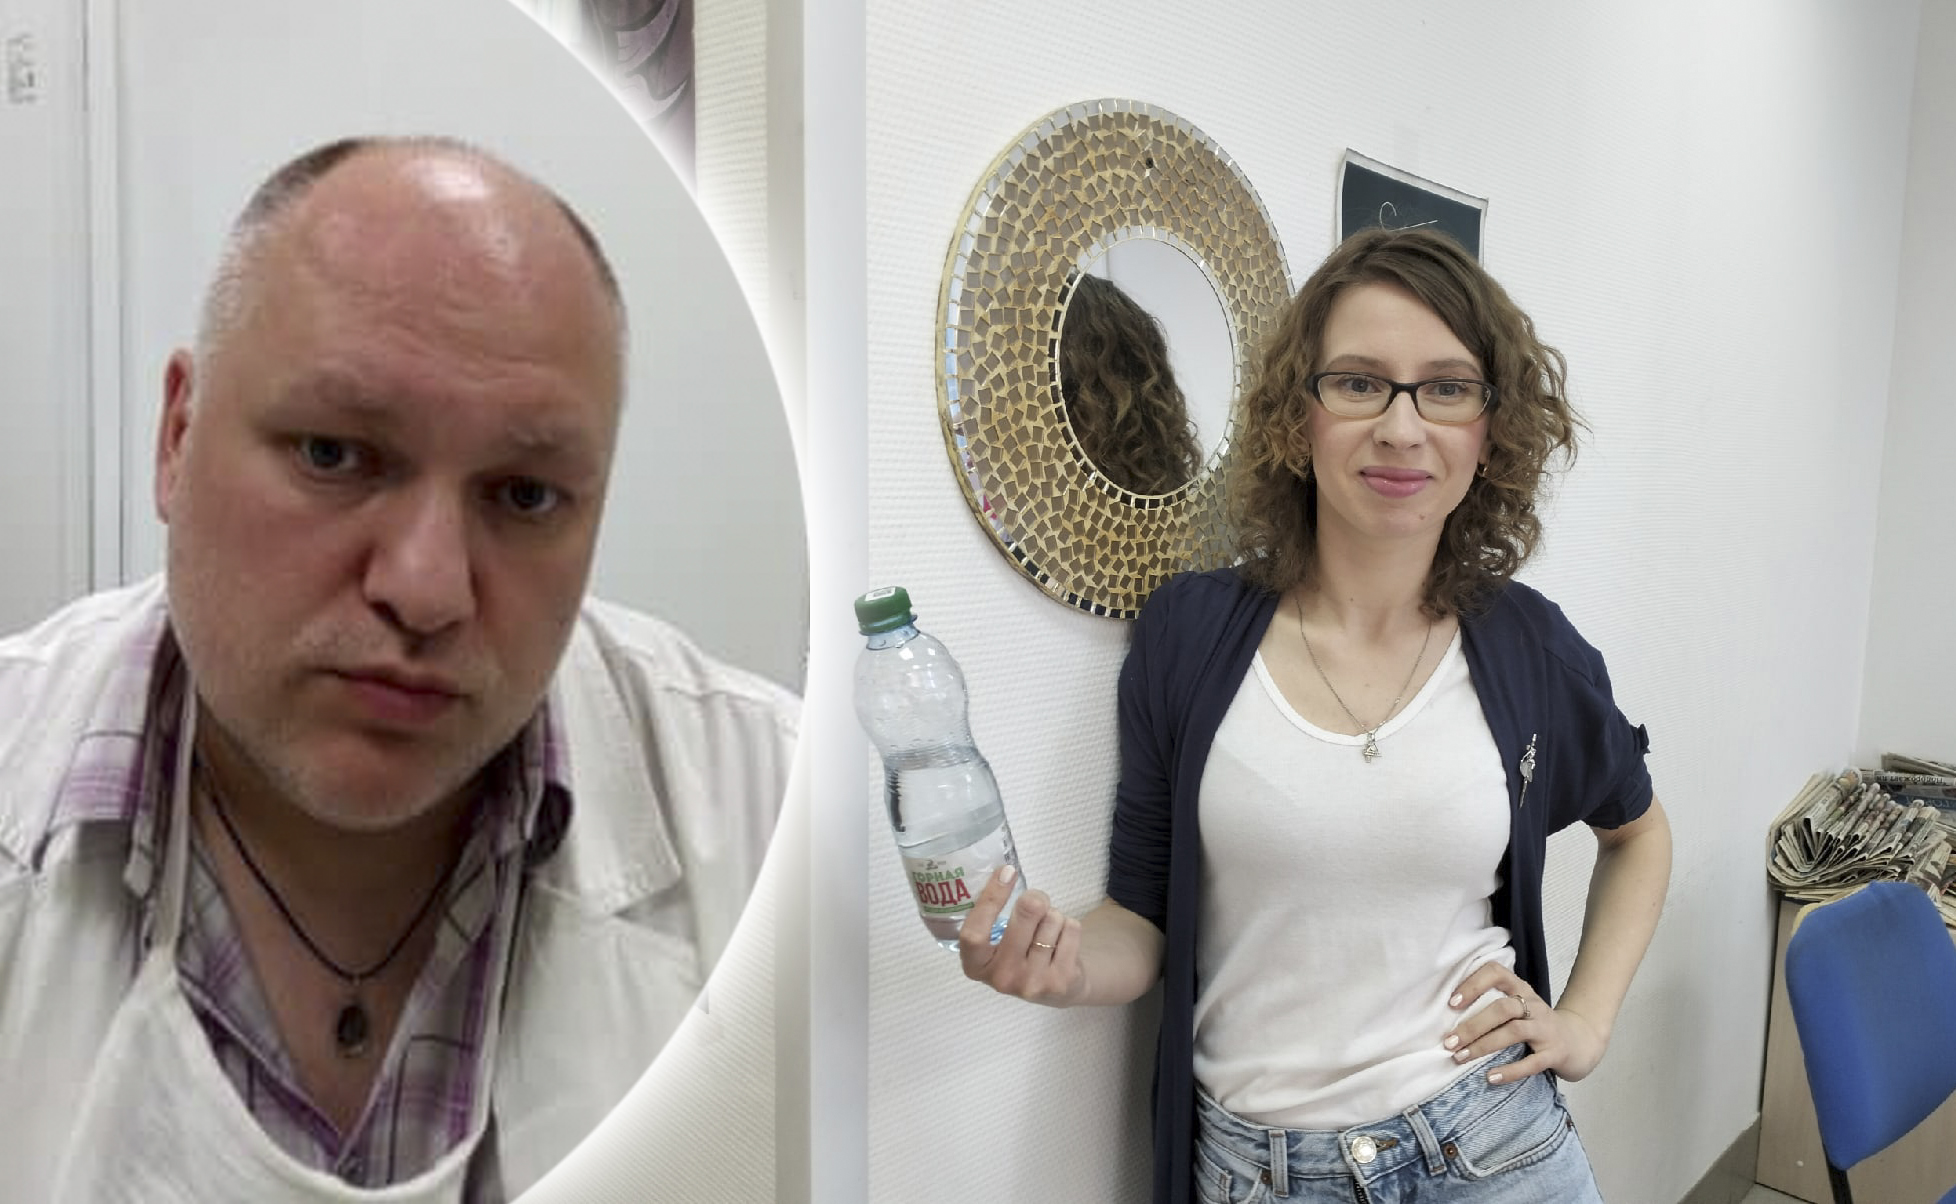  "Не пейте холодную воду": врач из Ярославля дал лайфхак, как пережить жару